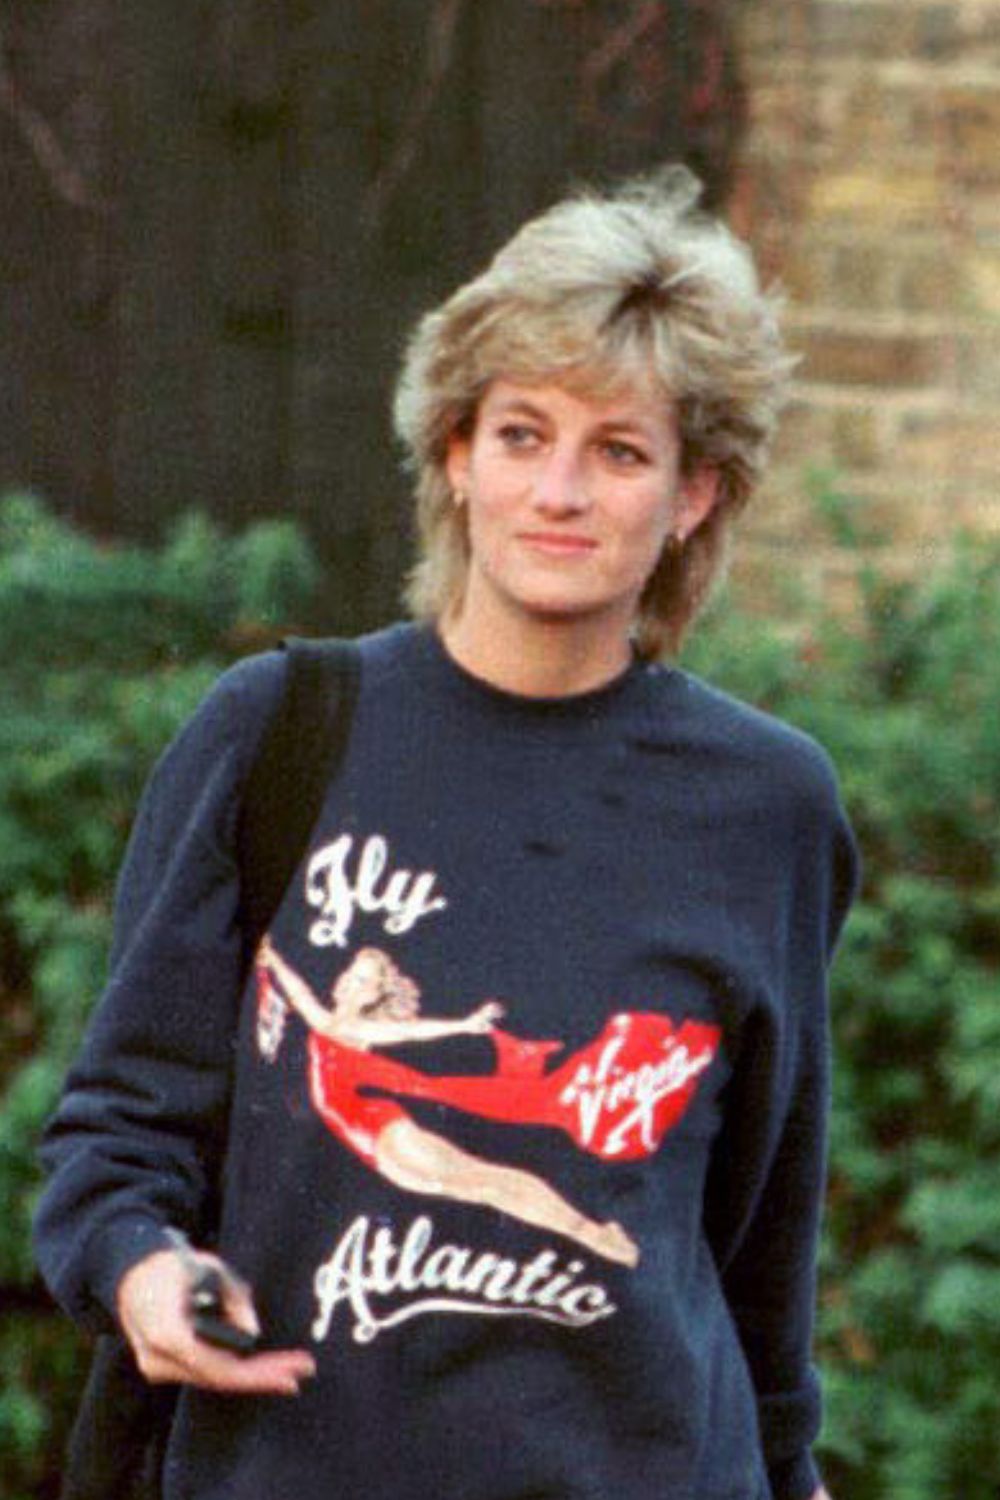 Princess Diana Hair - Princess Diana, Princess of Wales, wearing Virgin Atlantic sweatshirt, leaves Chelsea Harbour Club - GettyImages 76214568